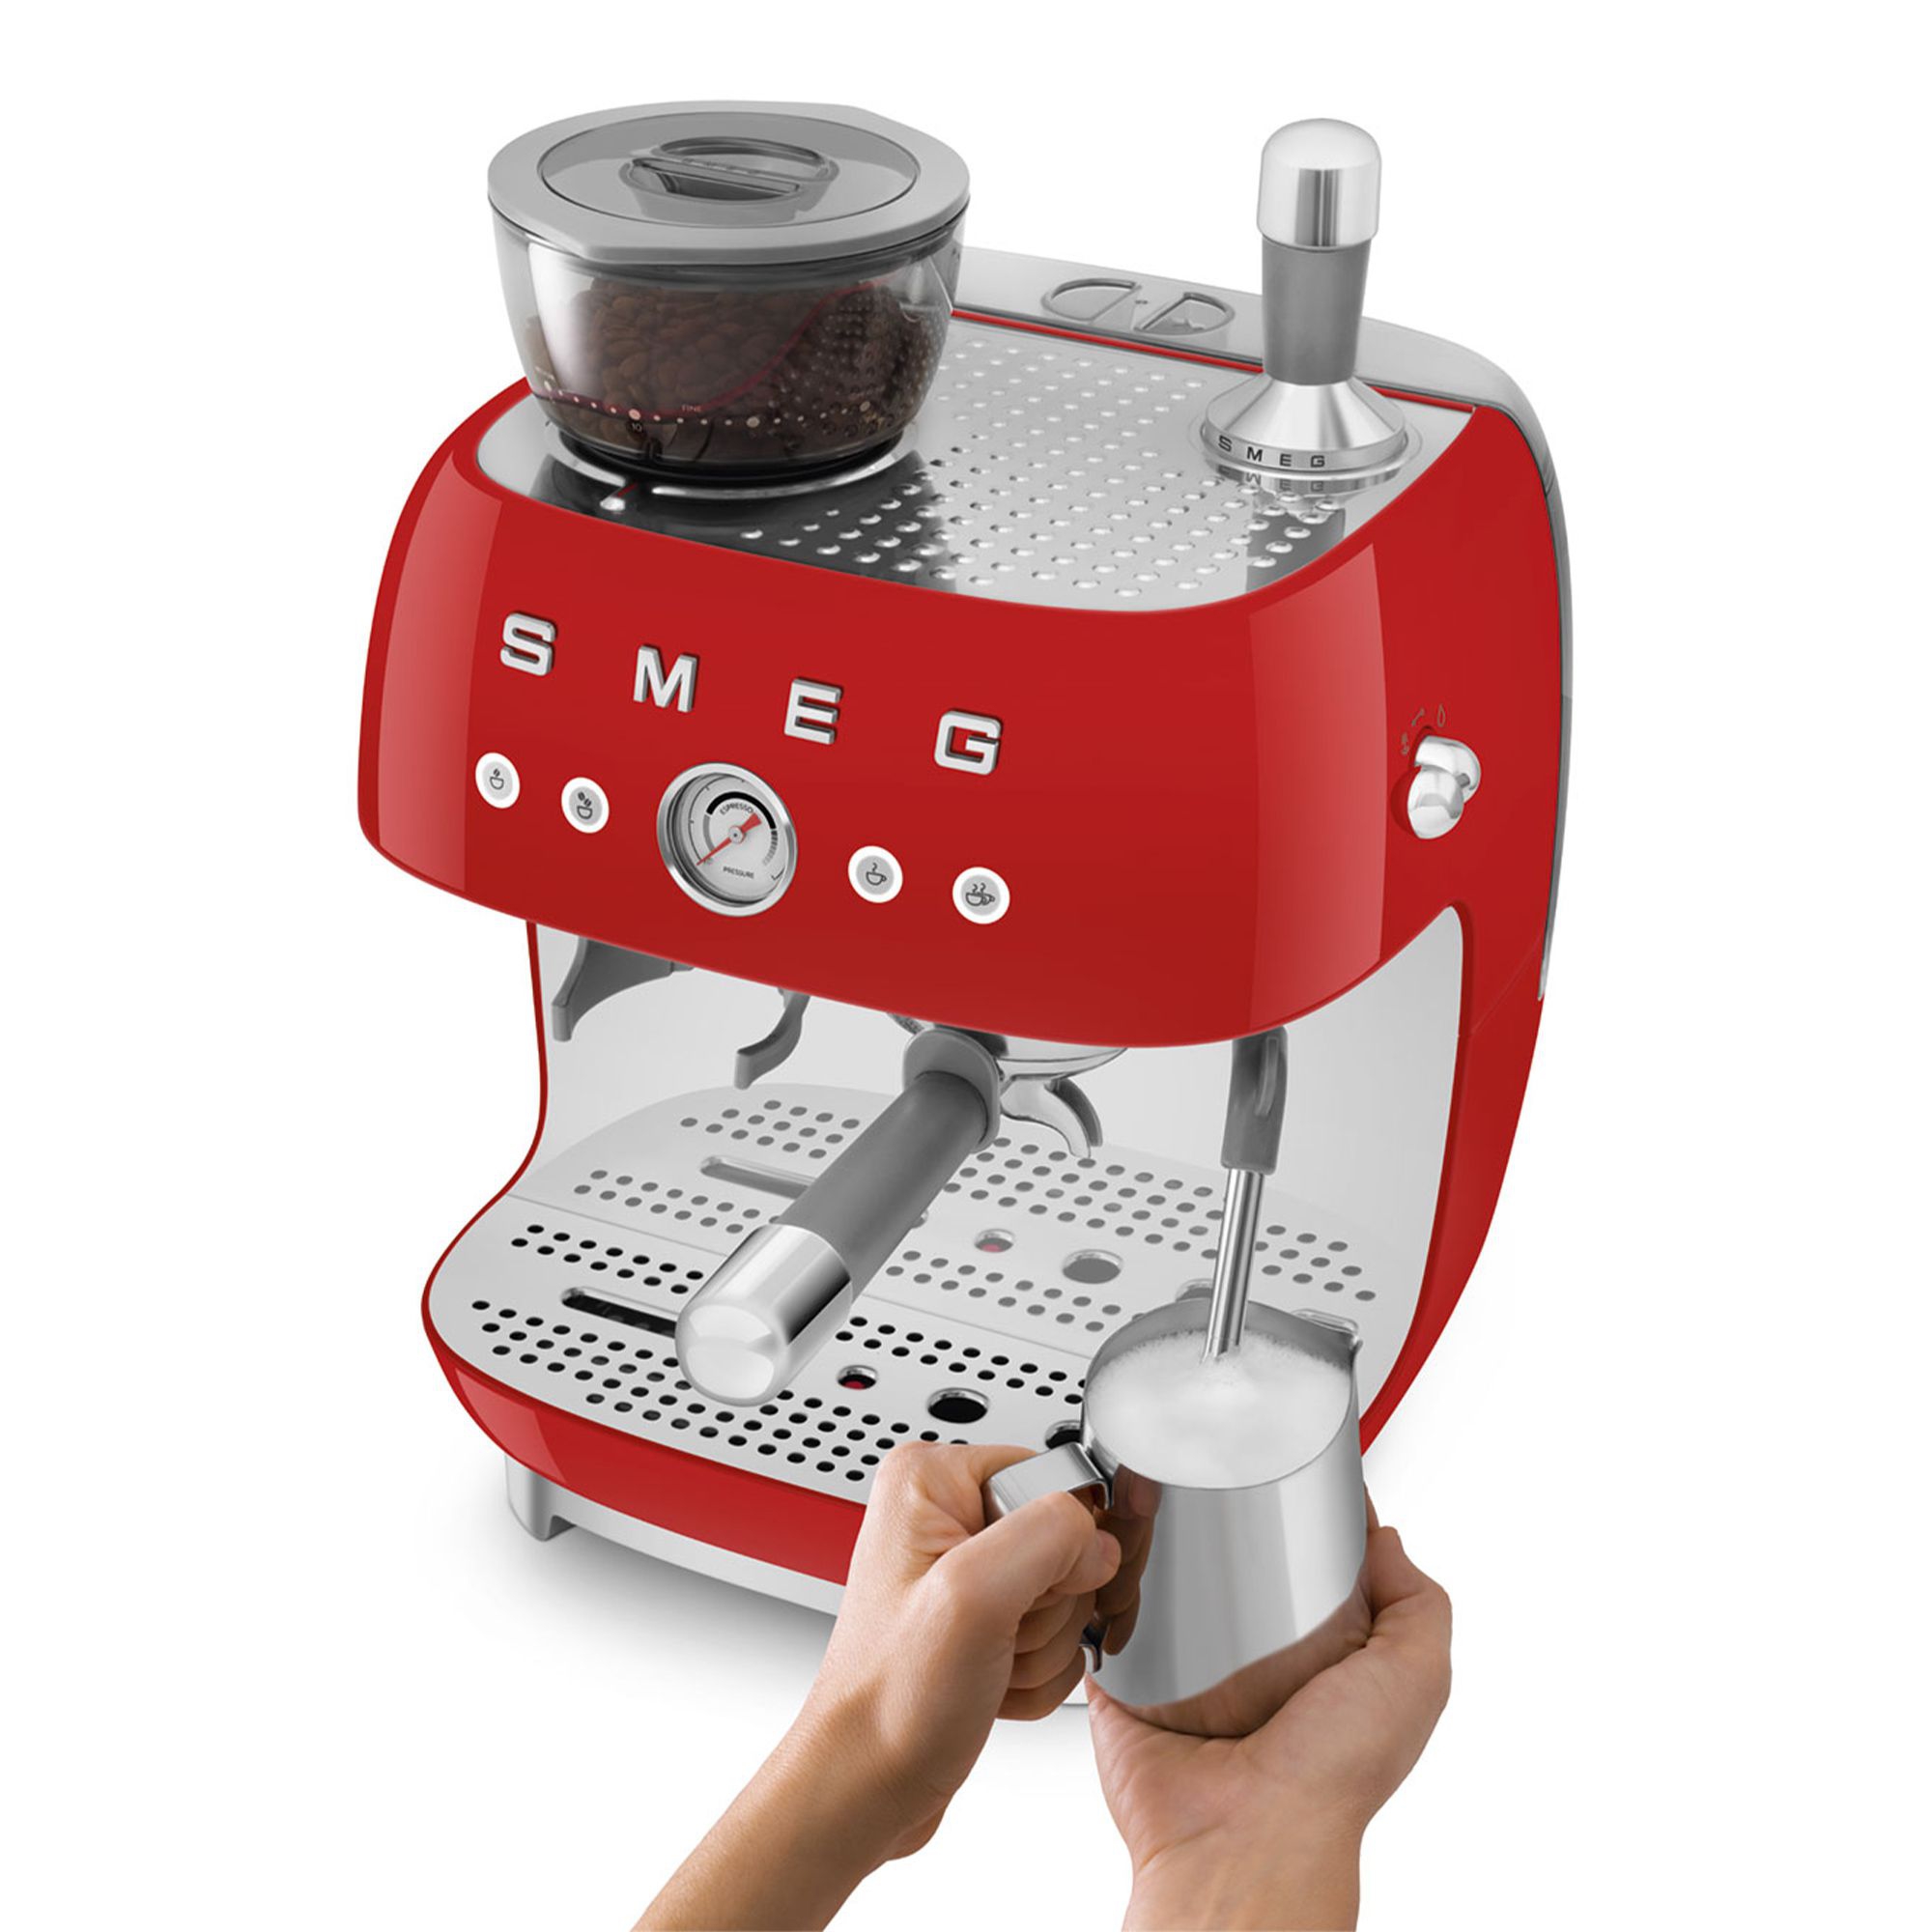 Smeg - Espresso machine with grinder - red